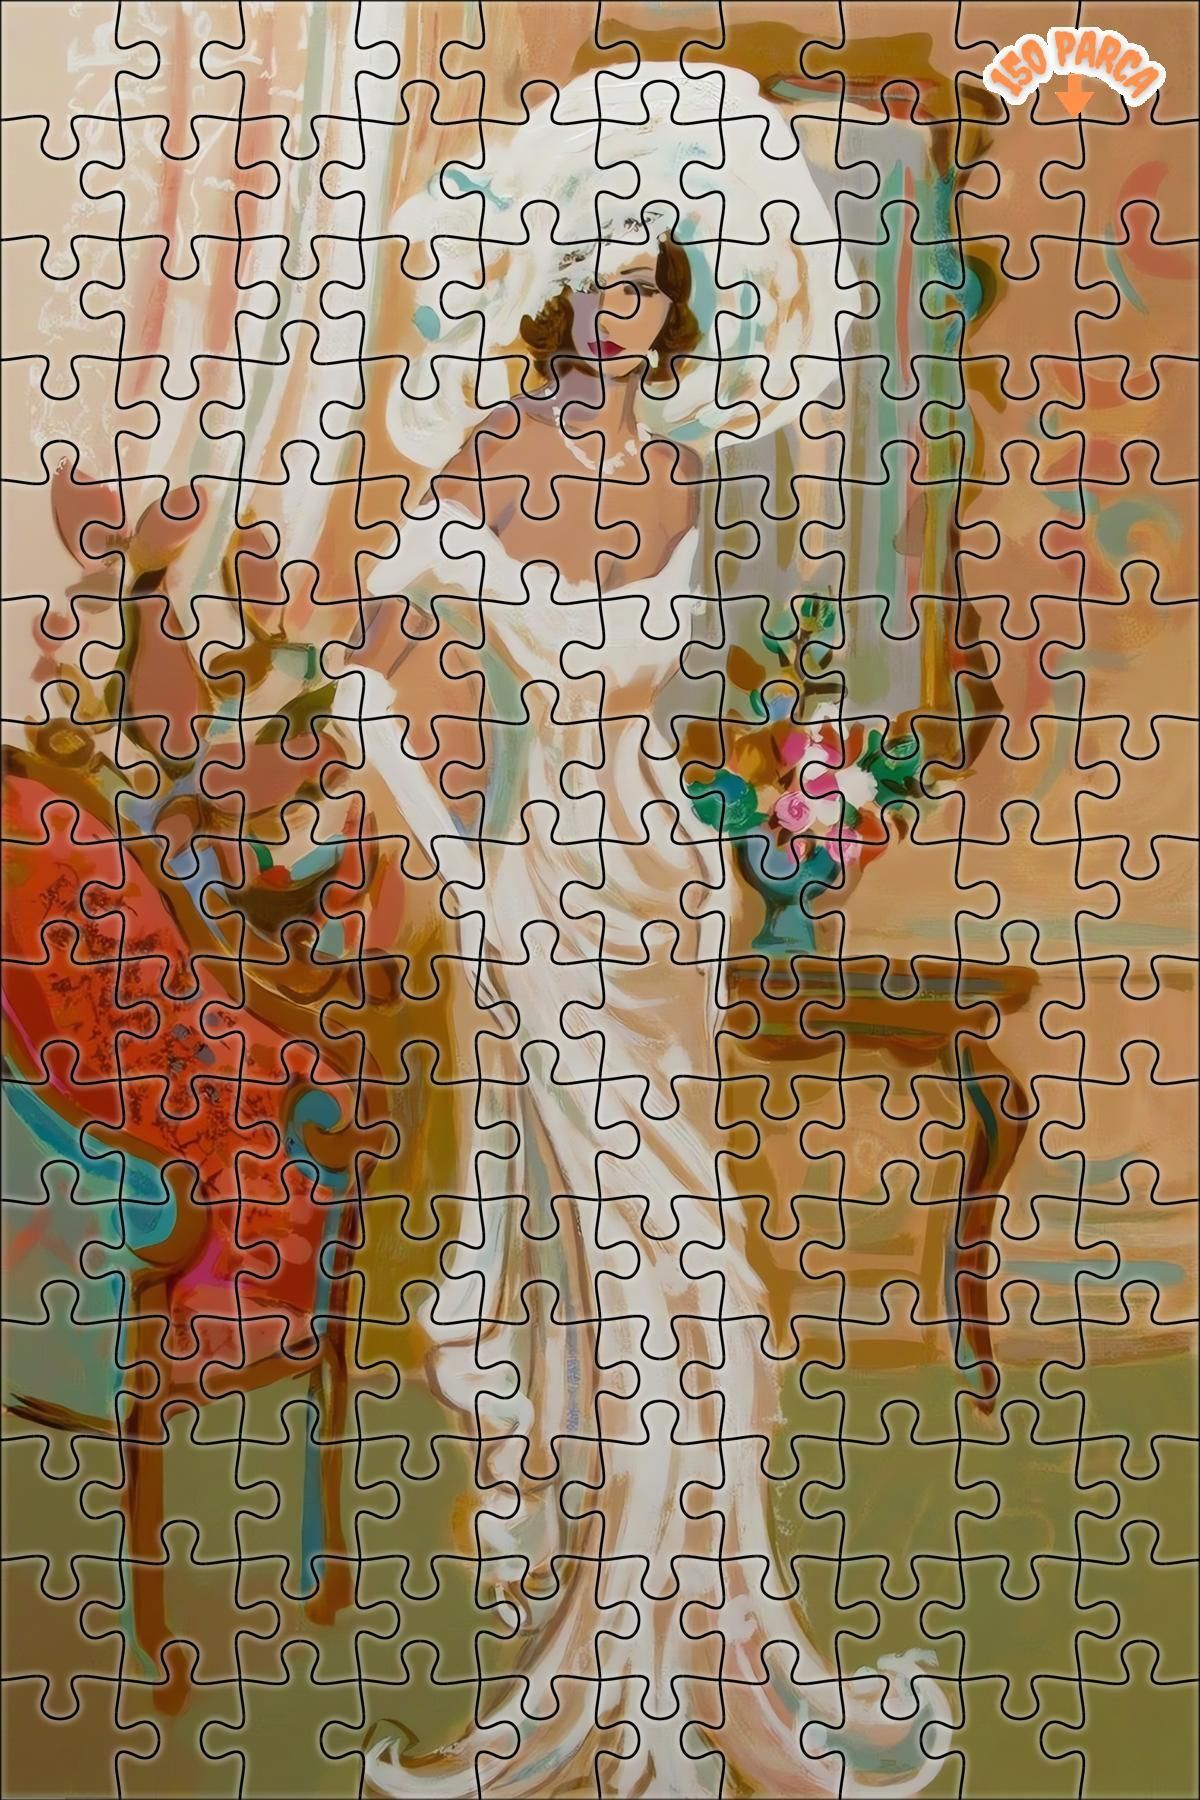 Teona Ahşap Modern Sanat Kadın Yağlı Boya Dekoratif Çift Katlı Çerçeveli Asılabilir Ahşap Puzzle 150 PARÇA 20X30